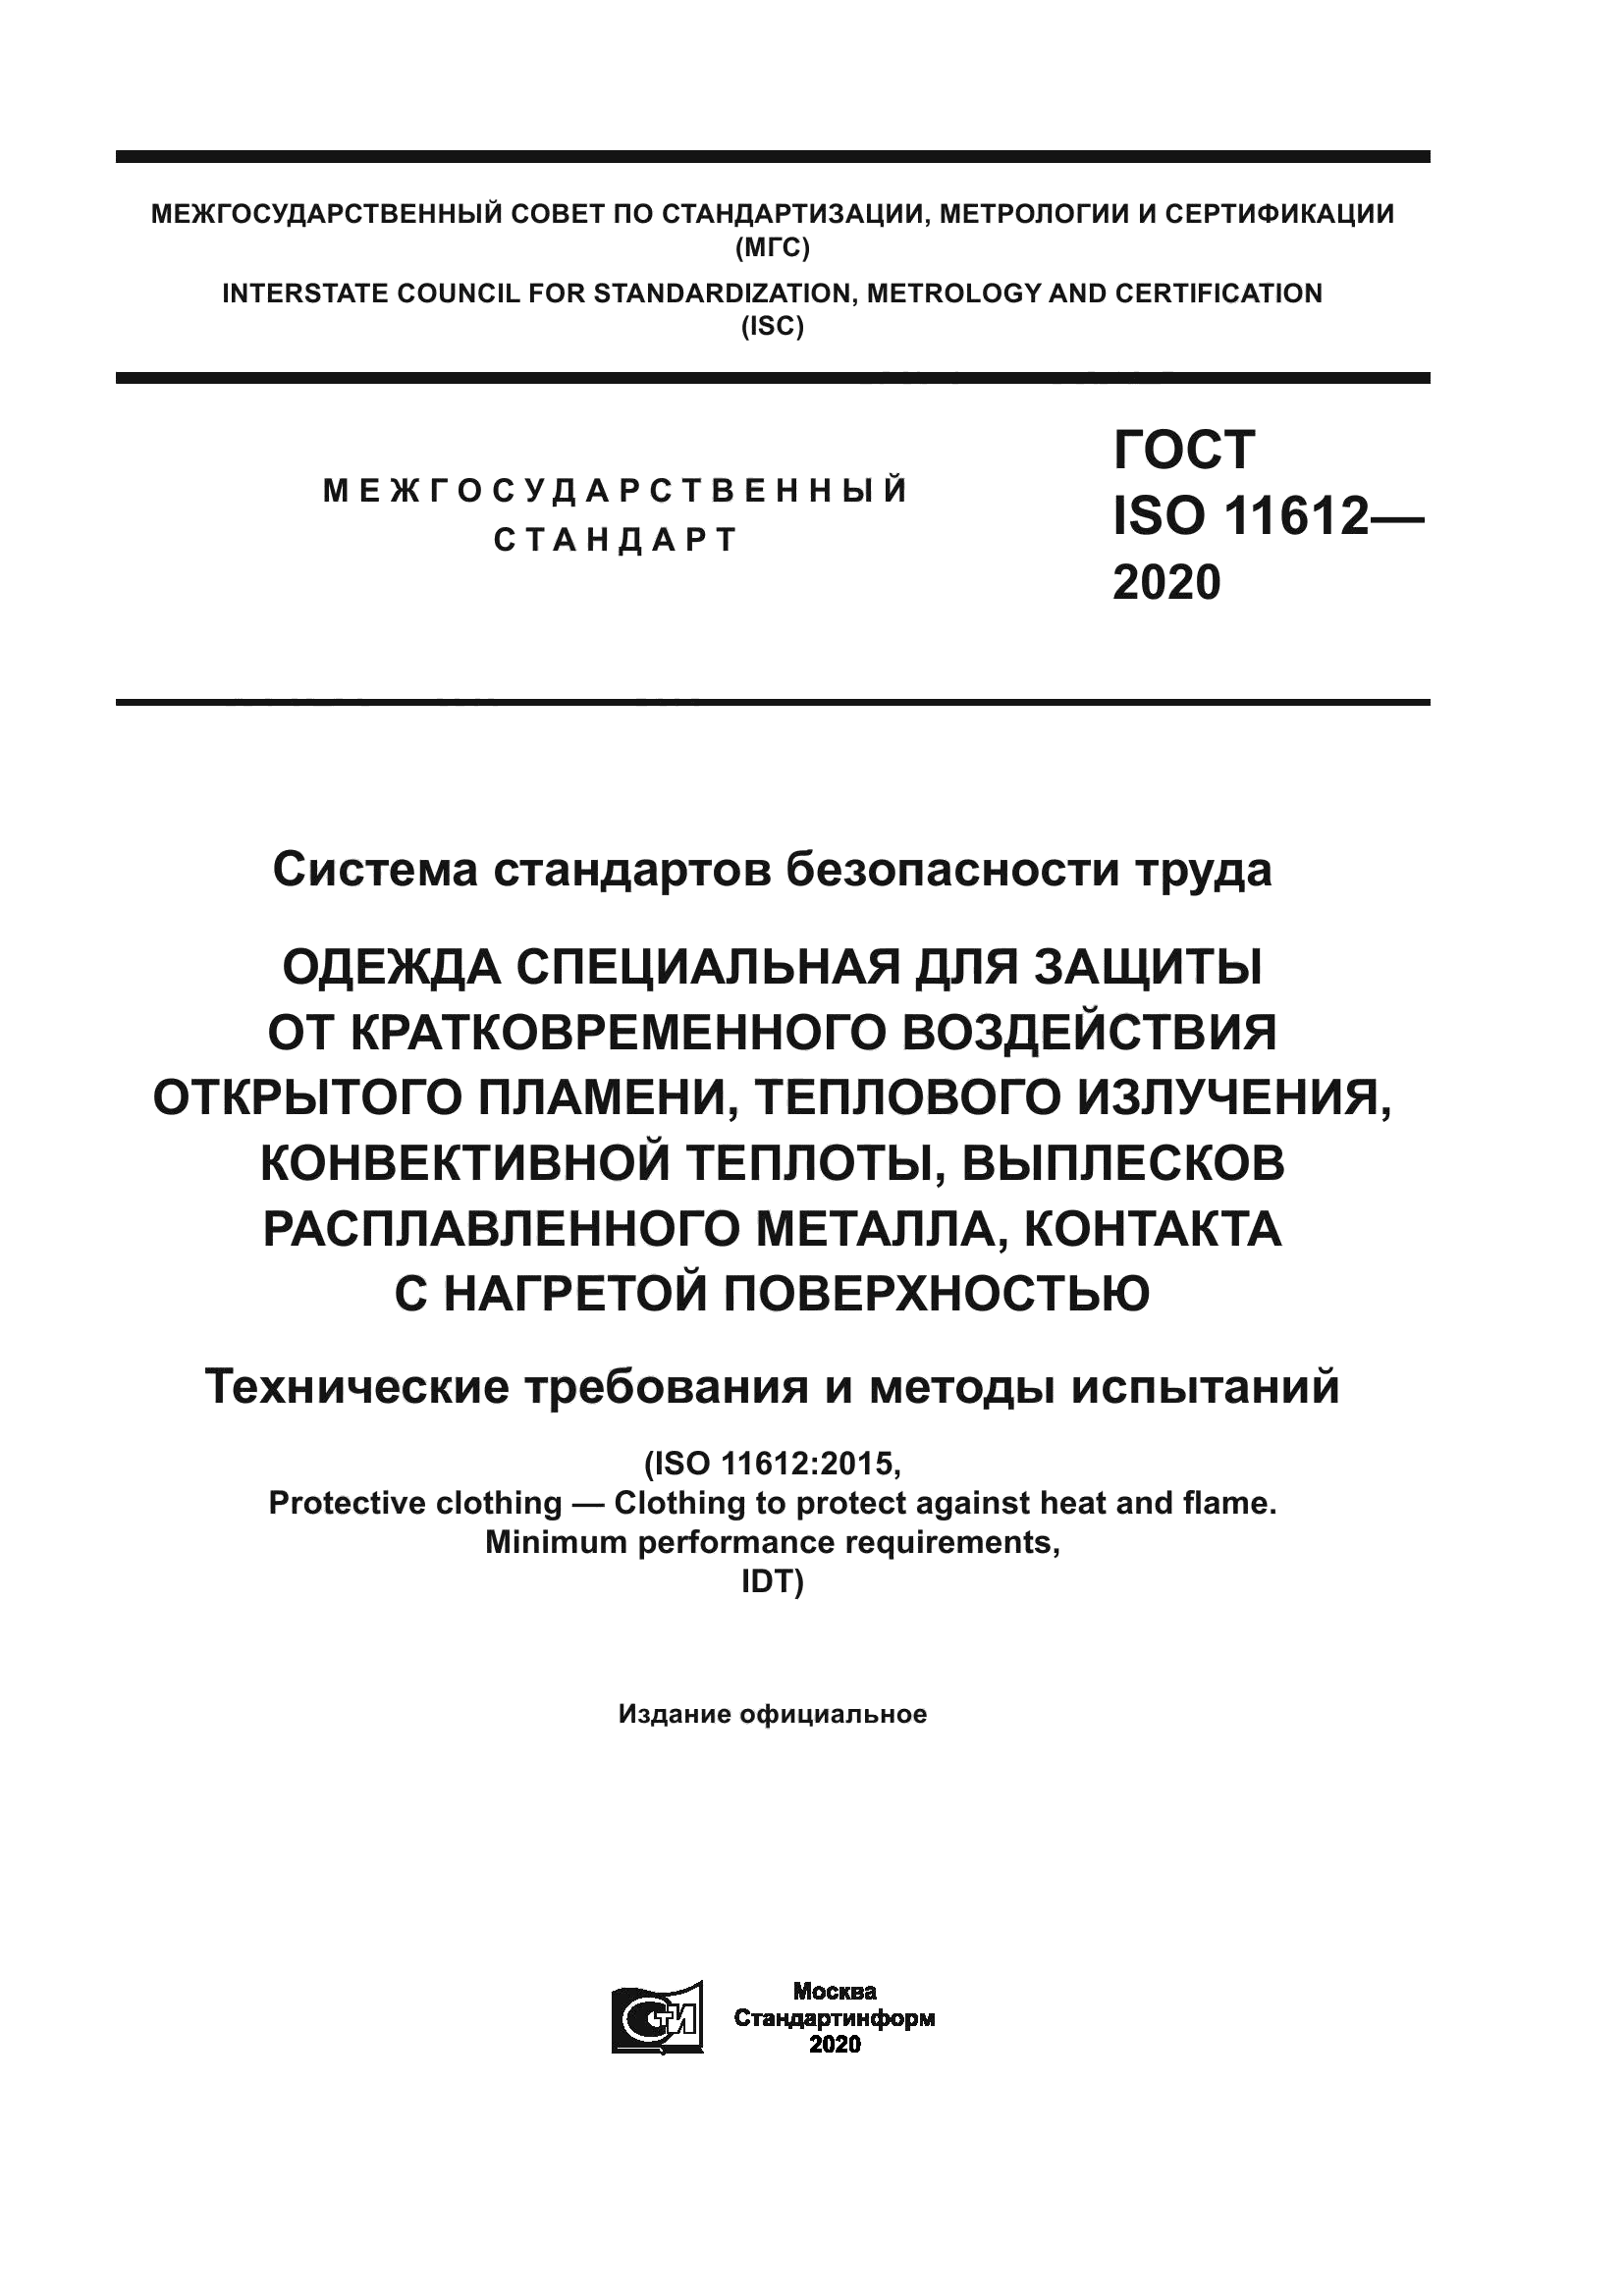 ГОСТ ISO 11612-2020